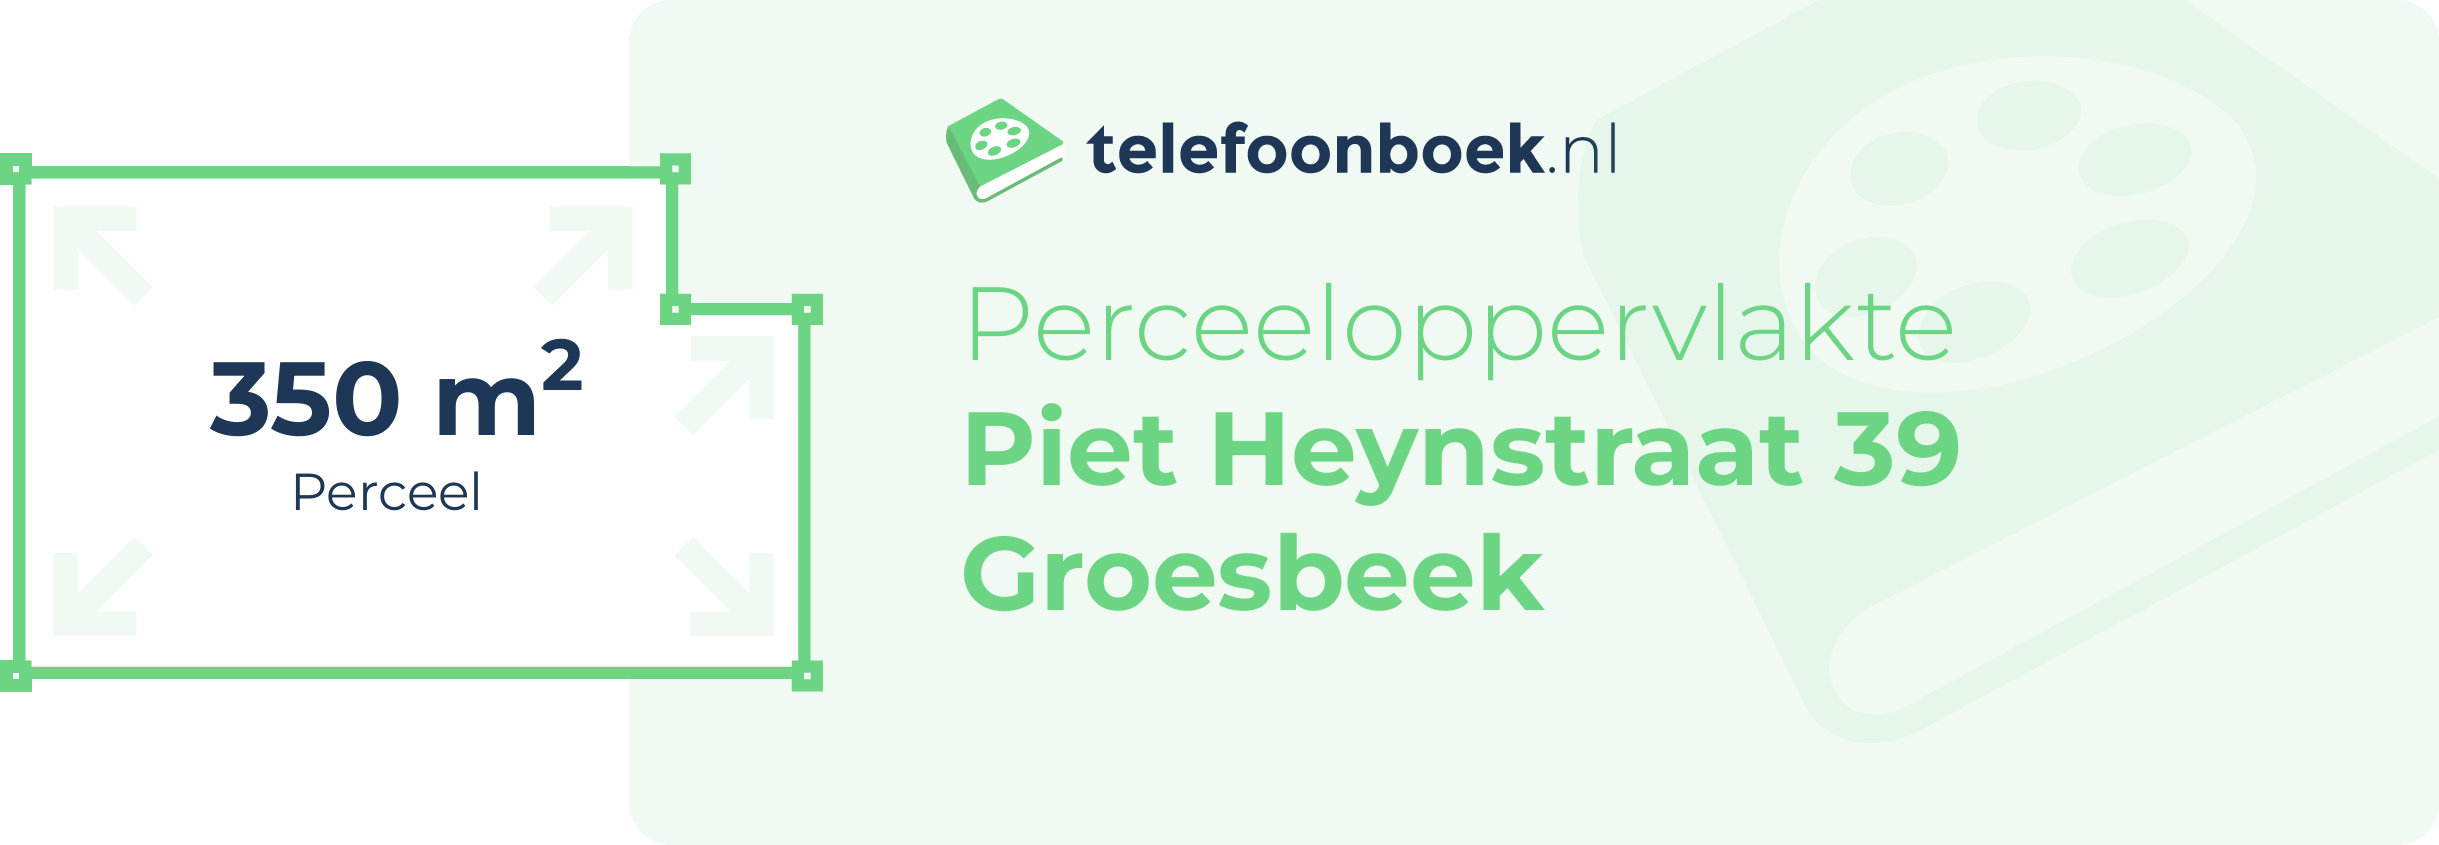 Perceeloppervlakte Piet Heynstraat 39 Groesbeek